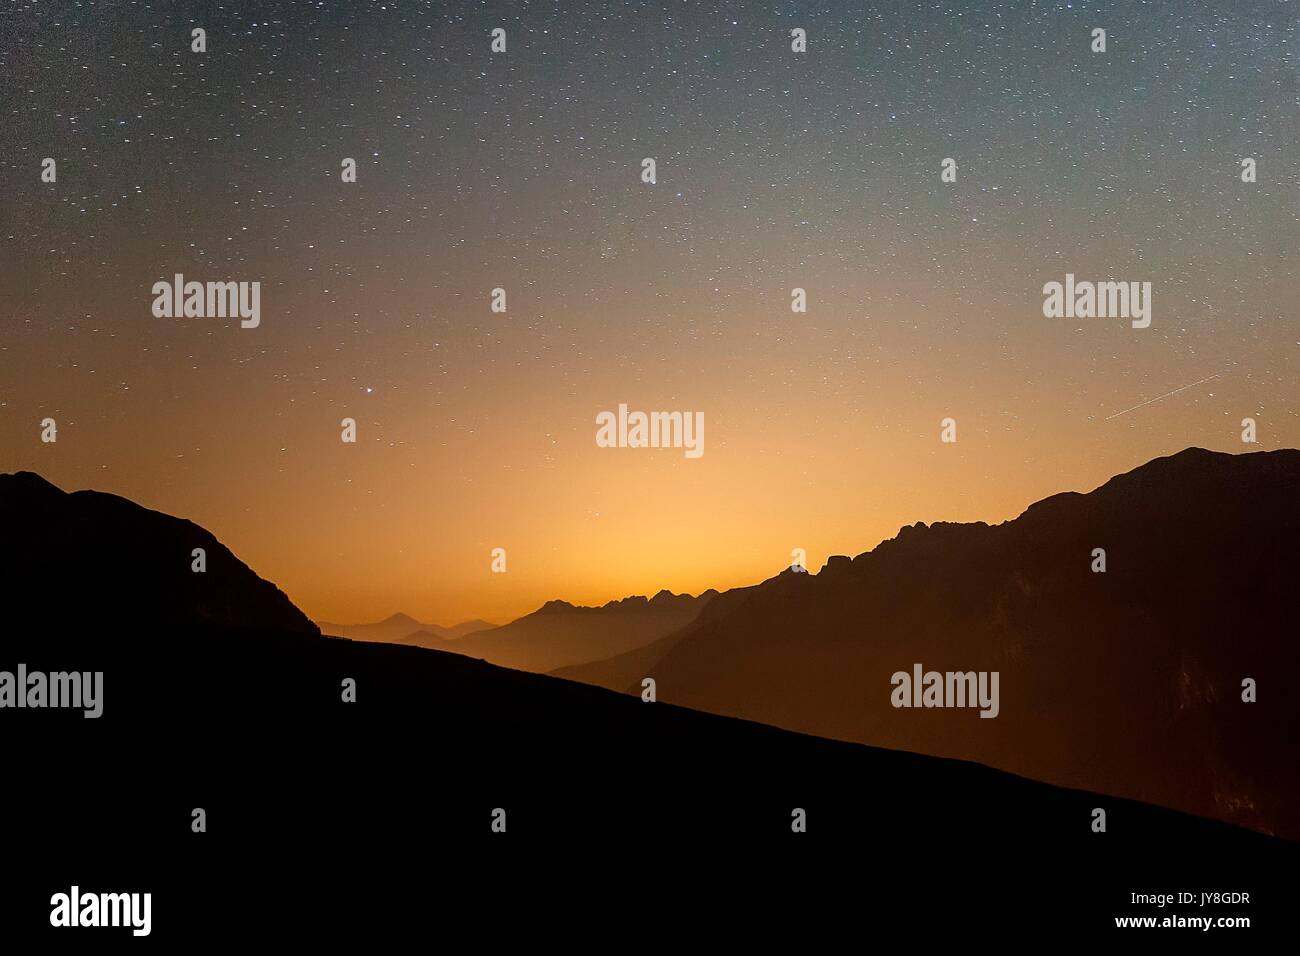 A starry night in Motta di Campodolcino, Valchiavenna, Valtellina, Lombardy Italy Europe Stock Photo